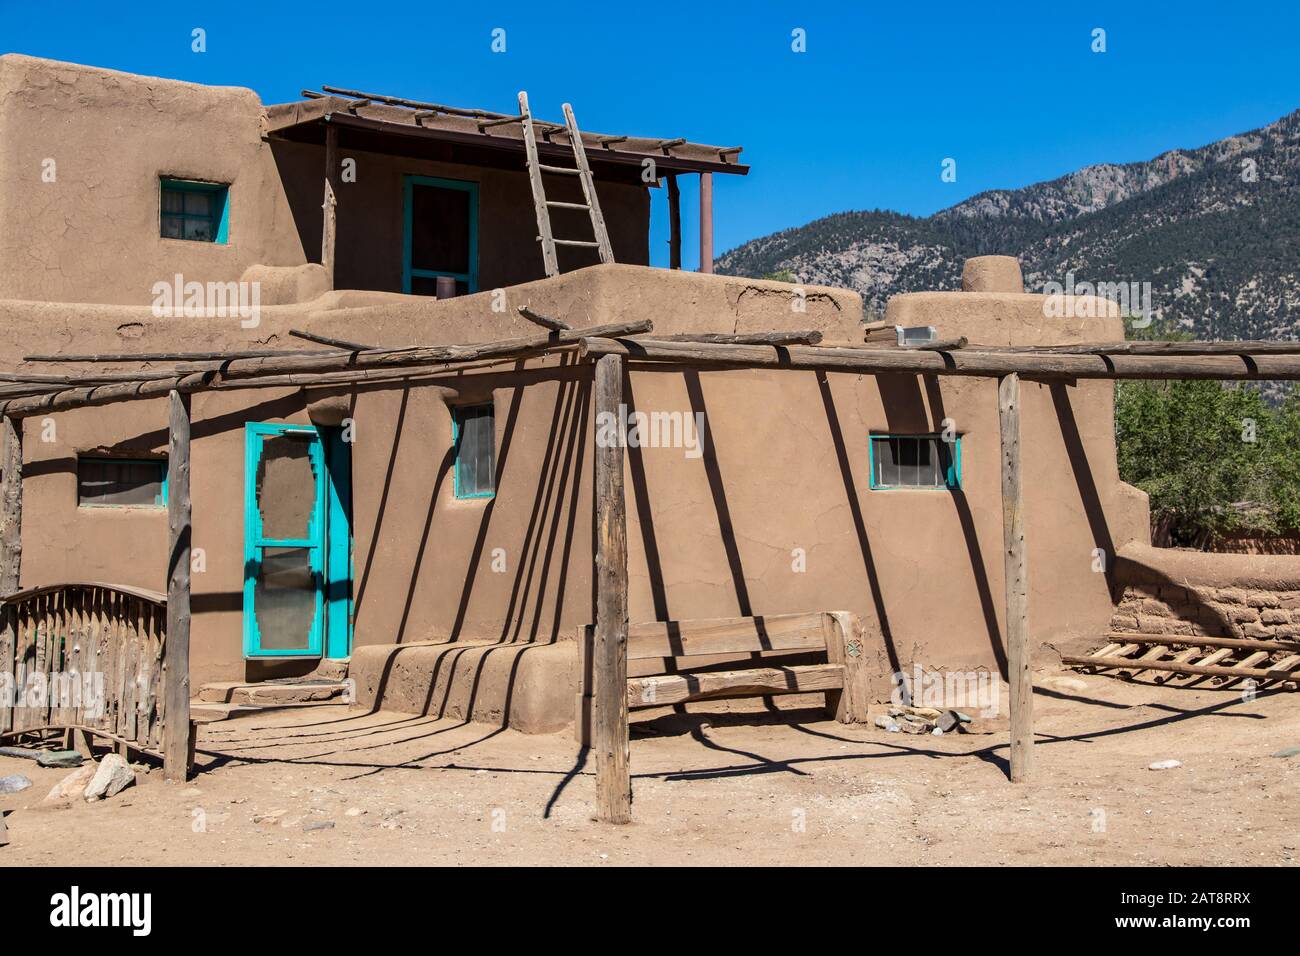 Mehrstöckige Gebäude aus Adobe Mud in Pueblo-Dorf, die seit mehr als 1000 Jahren ununterbrochen bewohnt werden, mit Bergen in New Mexico in der Ferne Stockfoto